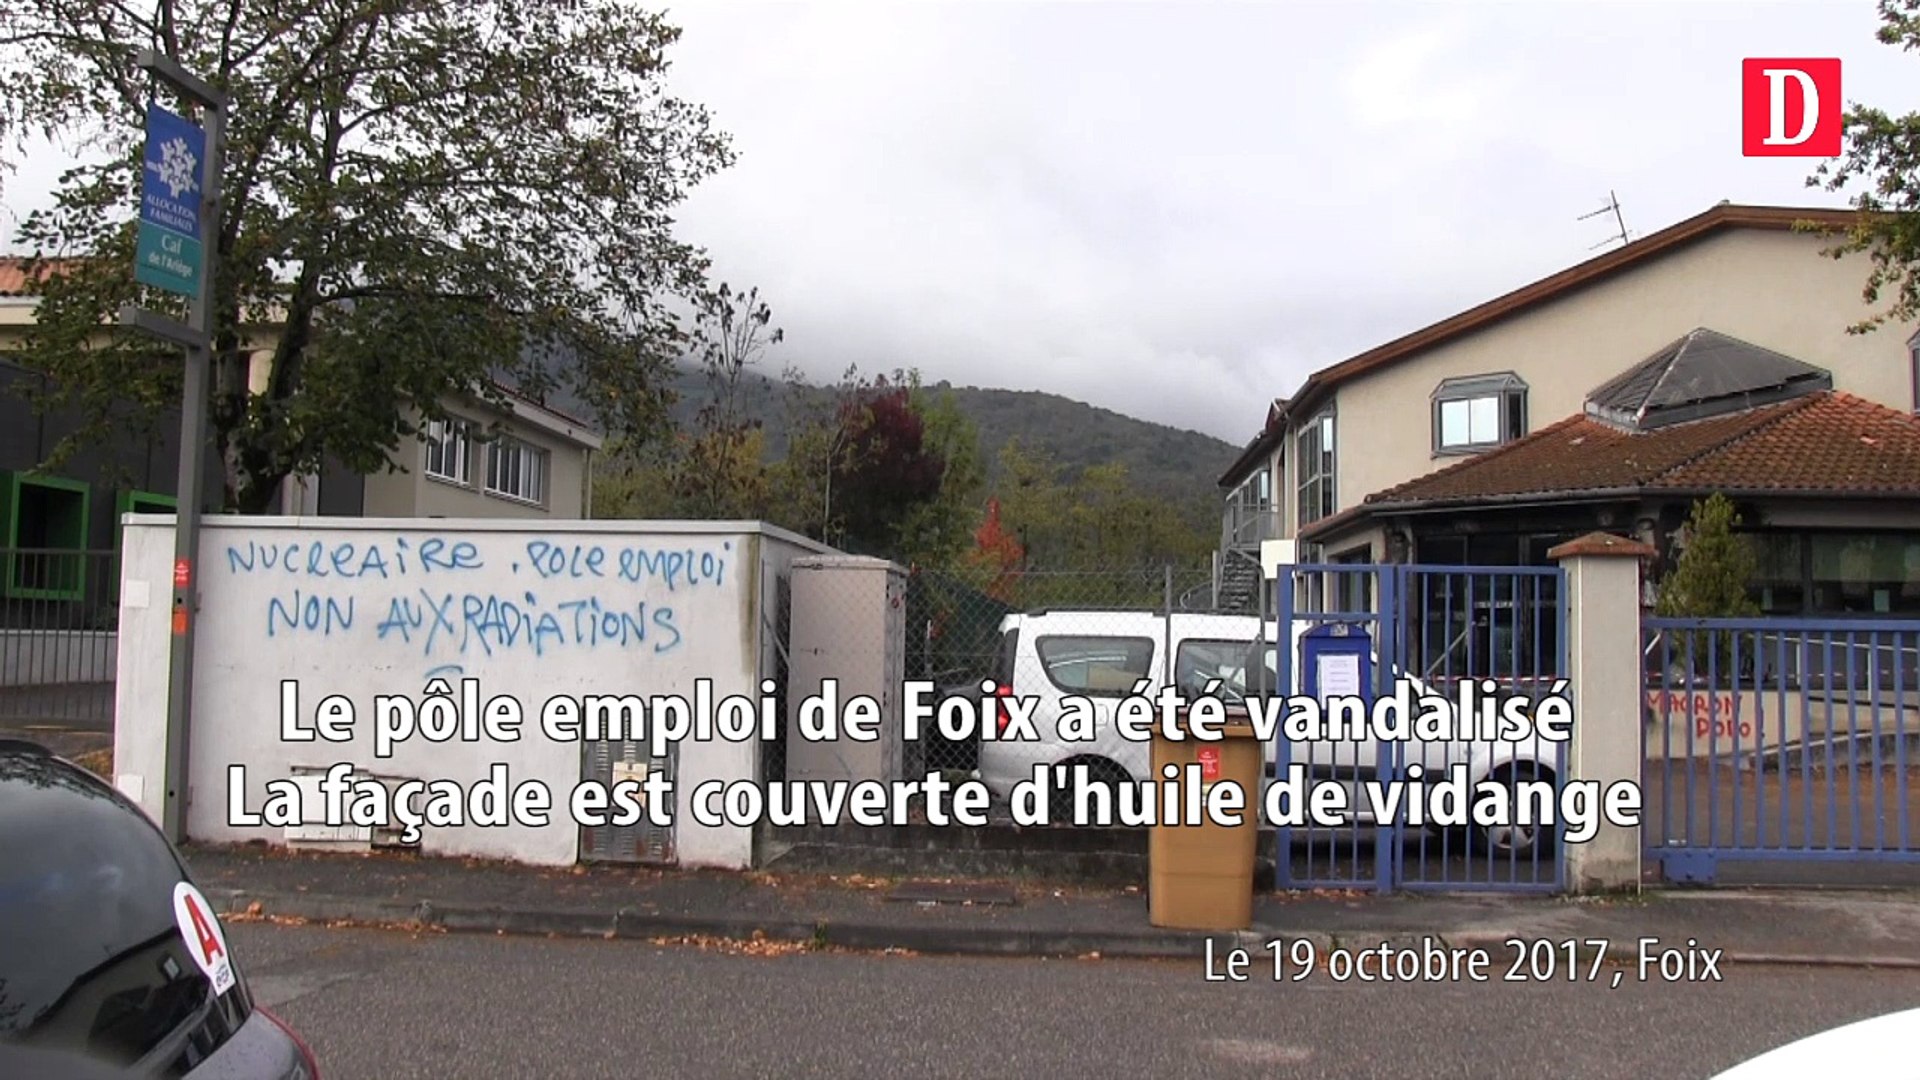 Le pôle emploi de Foix vandalisé le 19/10/2017 - Vidéo Dailymotion